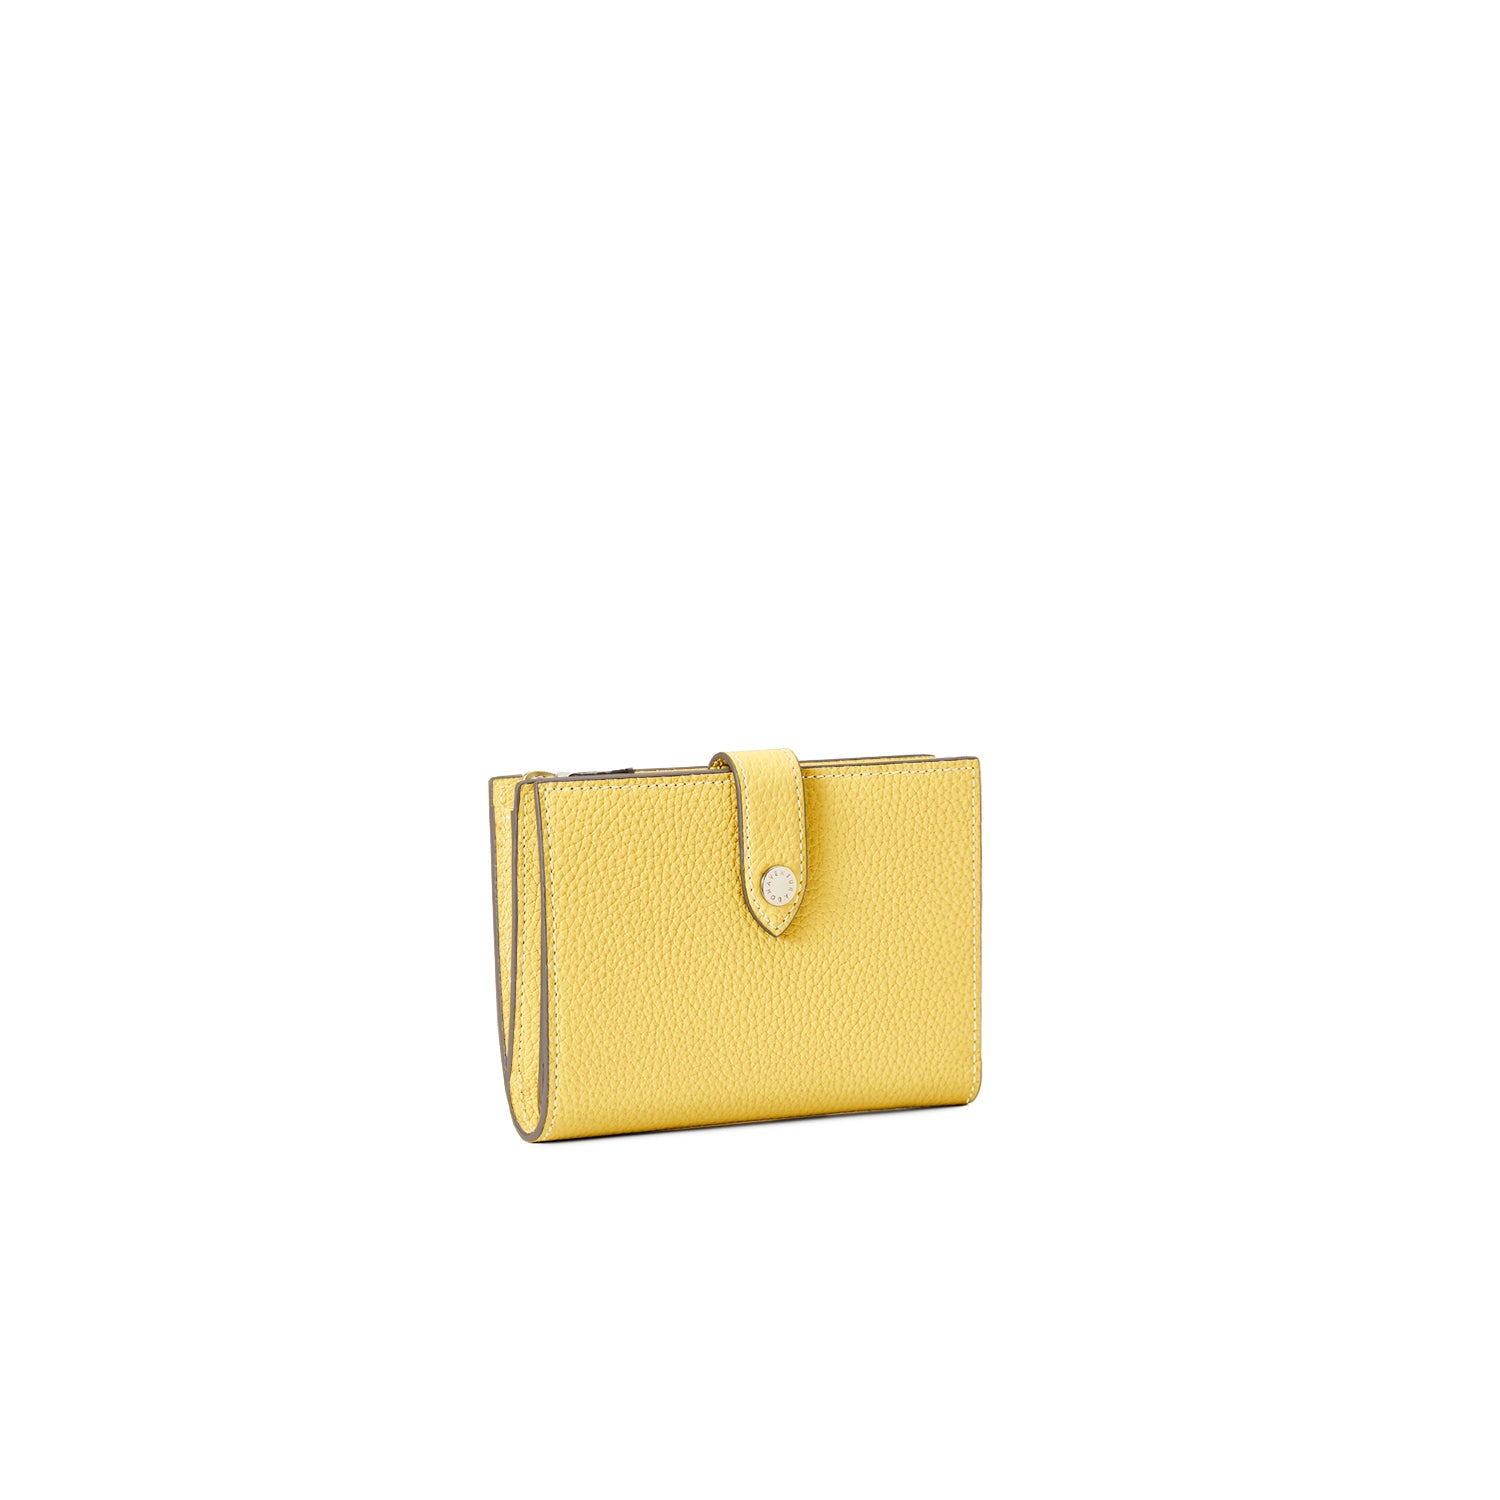 上質なレザーの二つ折り財布 – イタリア(ミラノ)発の高級革製品の通販 